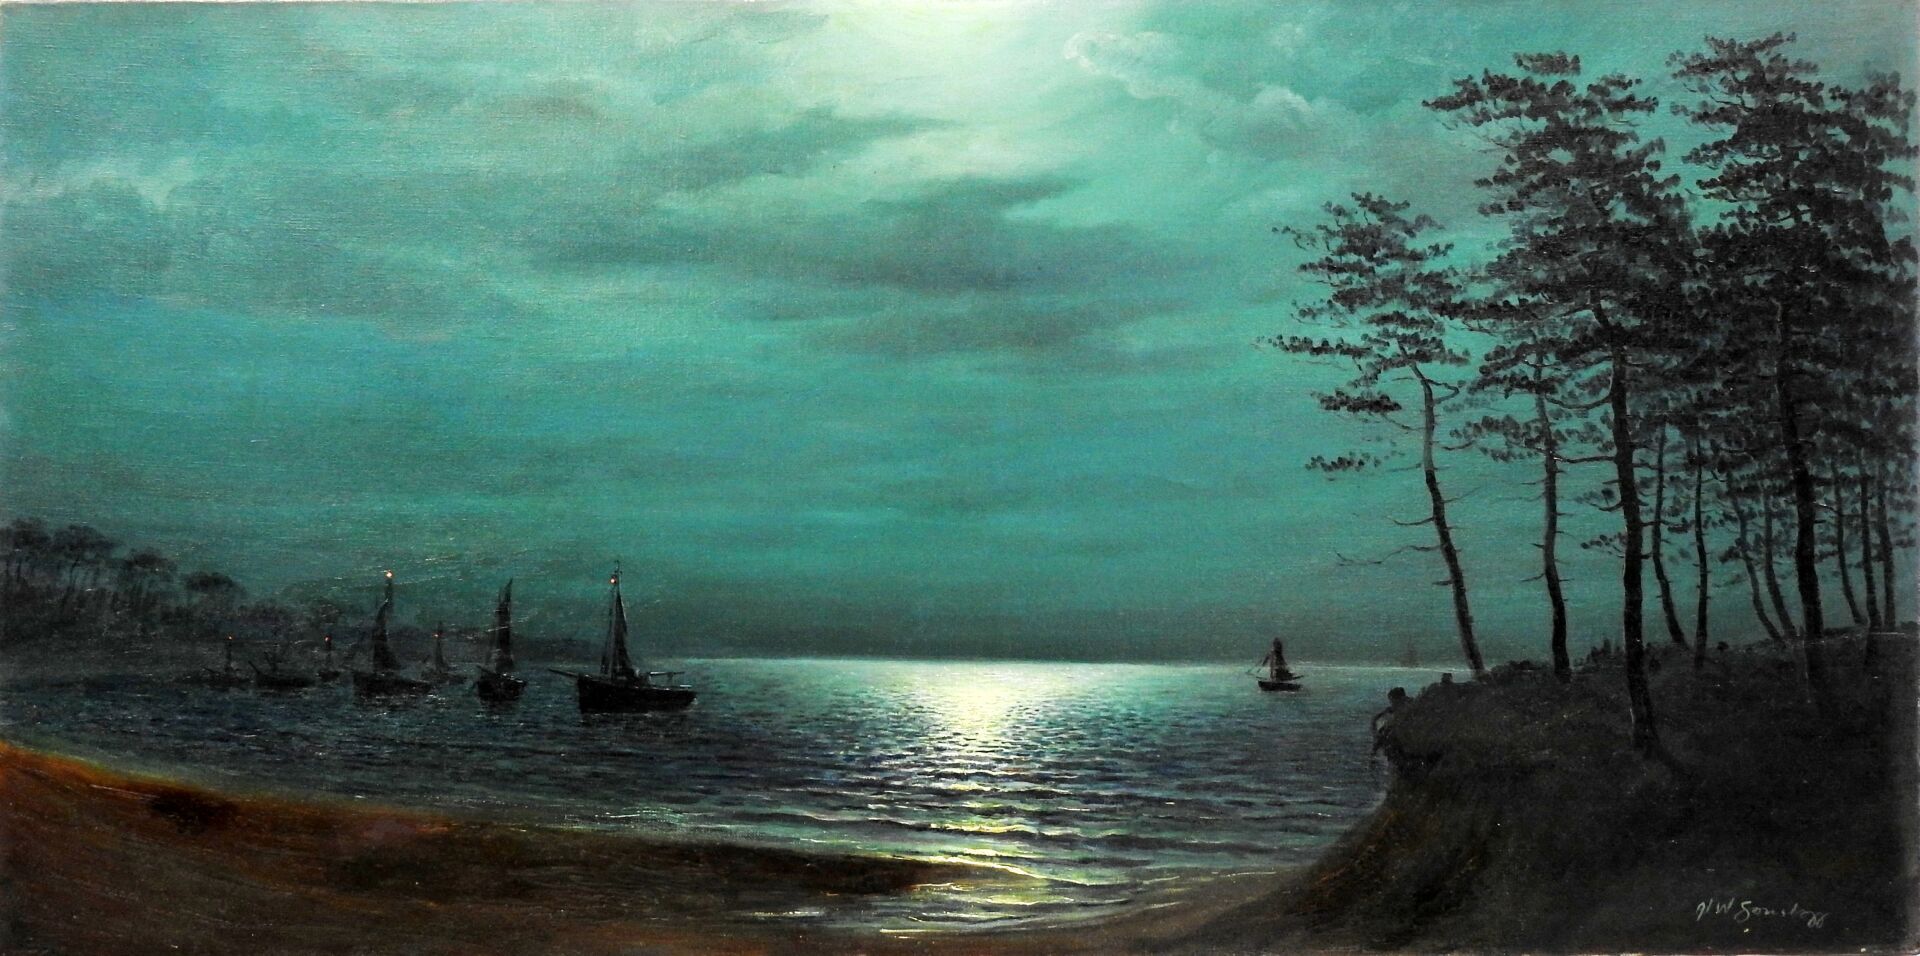 Null 
A.W.颂斯塔格 ? 




月光下的船只景观。




布面油画。右下方有签名。




50 x 100厘米。




磨损和撕裂。